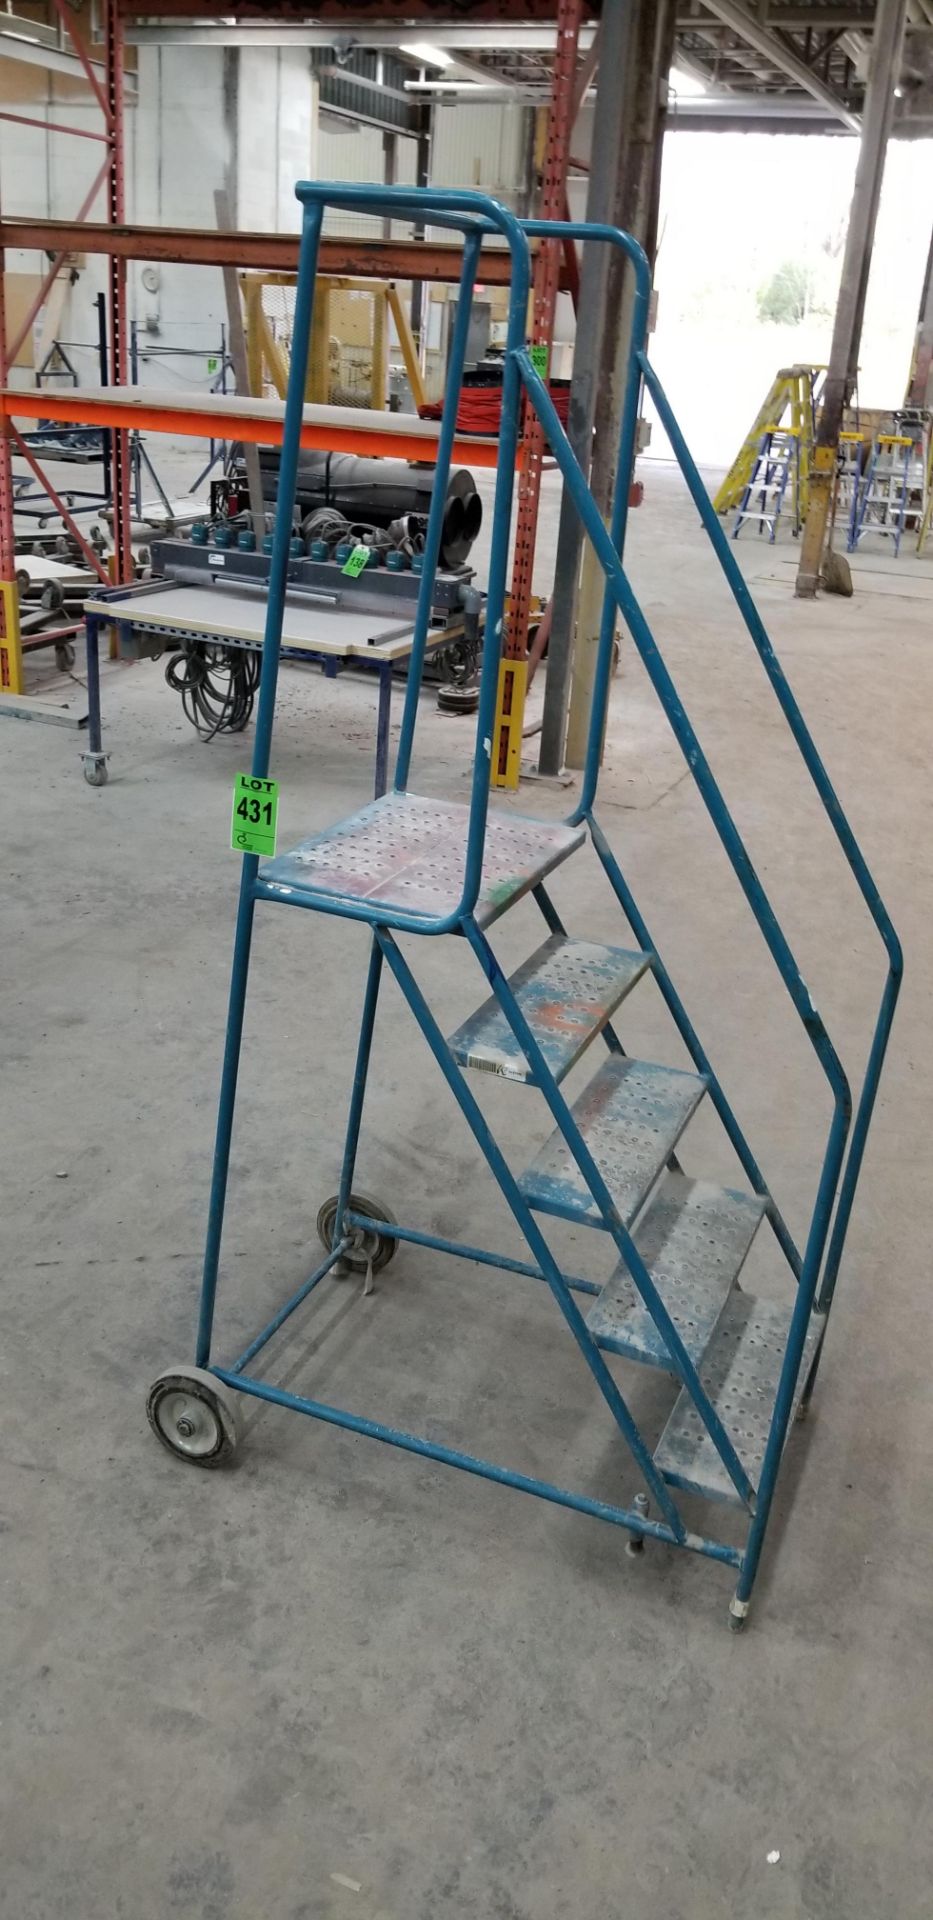 5-step rolling safety ladder with 4' top step//Échelle de sécurité roulante à 5 marches avec